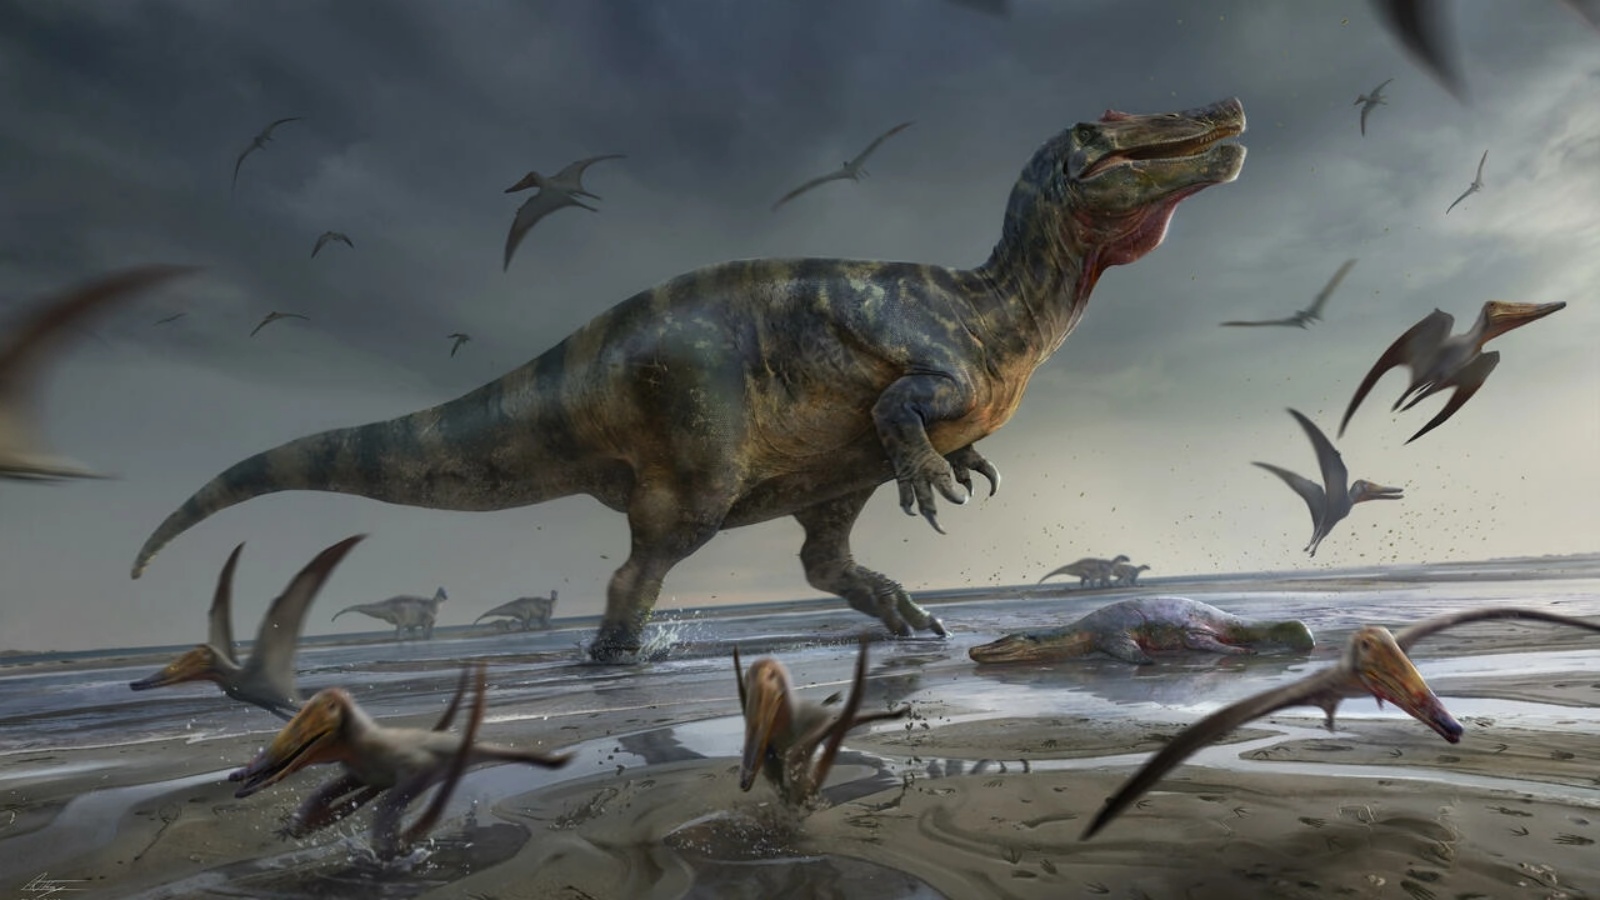 رسم فنان للسبينوصوريد الضخم وايت روك، والذي تم اكتشافه في جزيرة وايت بالمملكة المتحدة